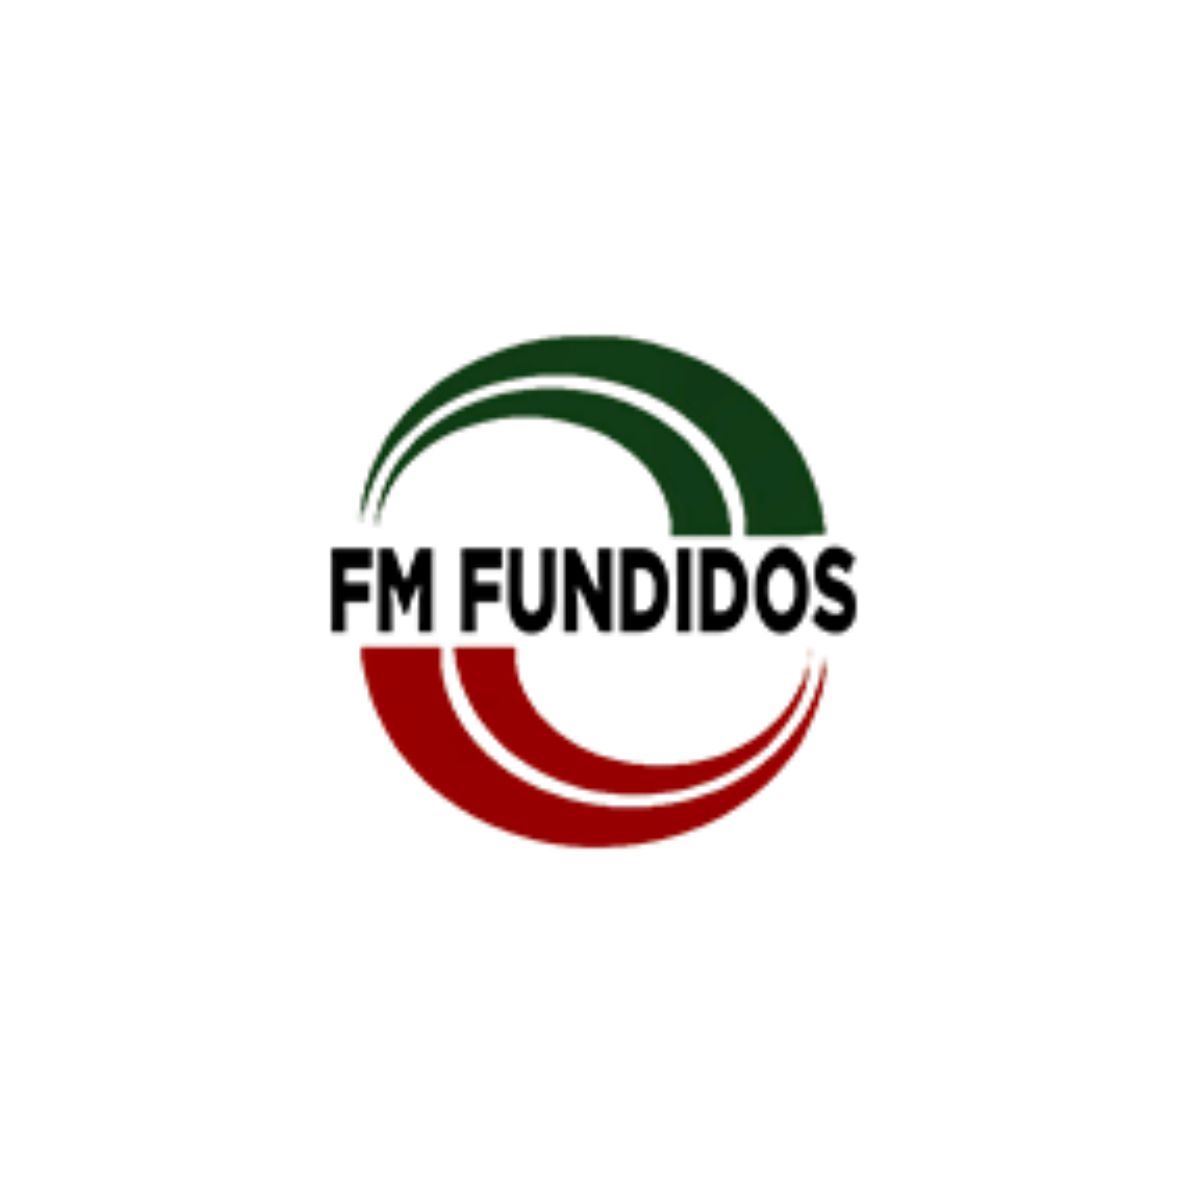 FM Fundidos Eireli